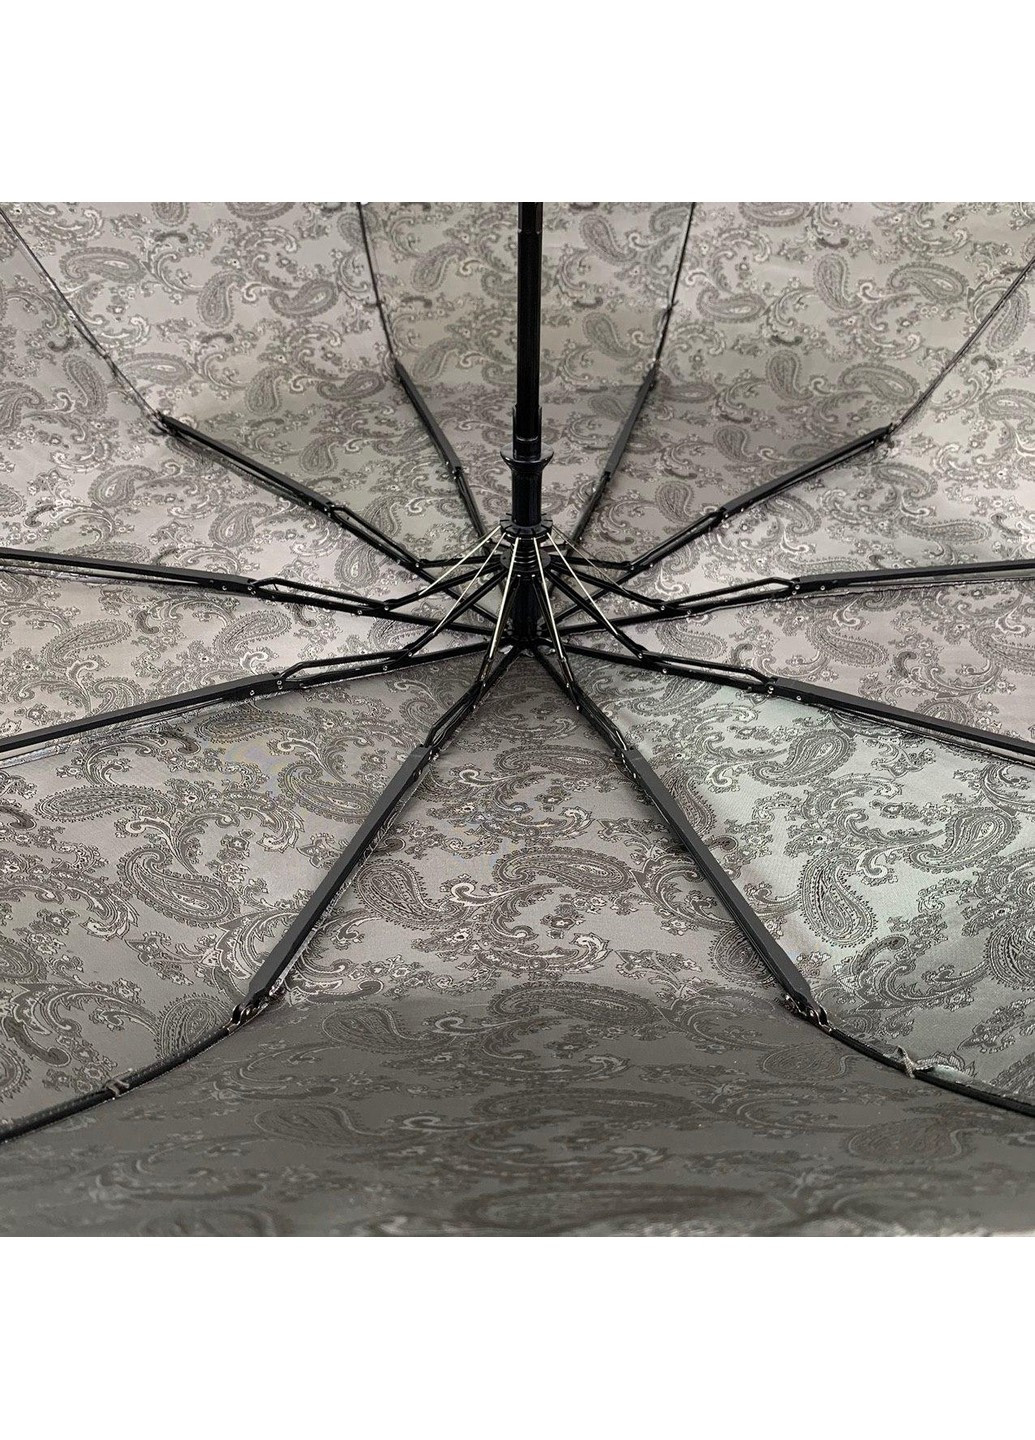 Женский зонт полуавтомат 102 см Bellissima (258639199)